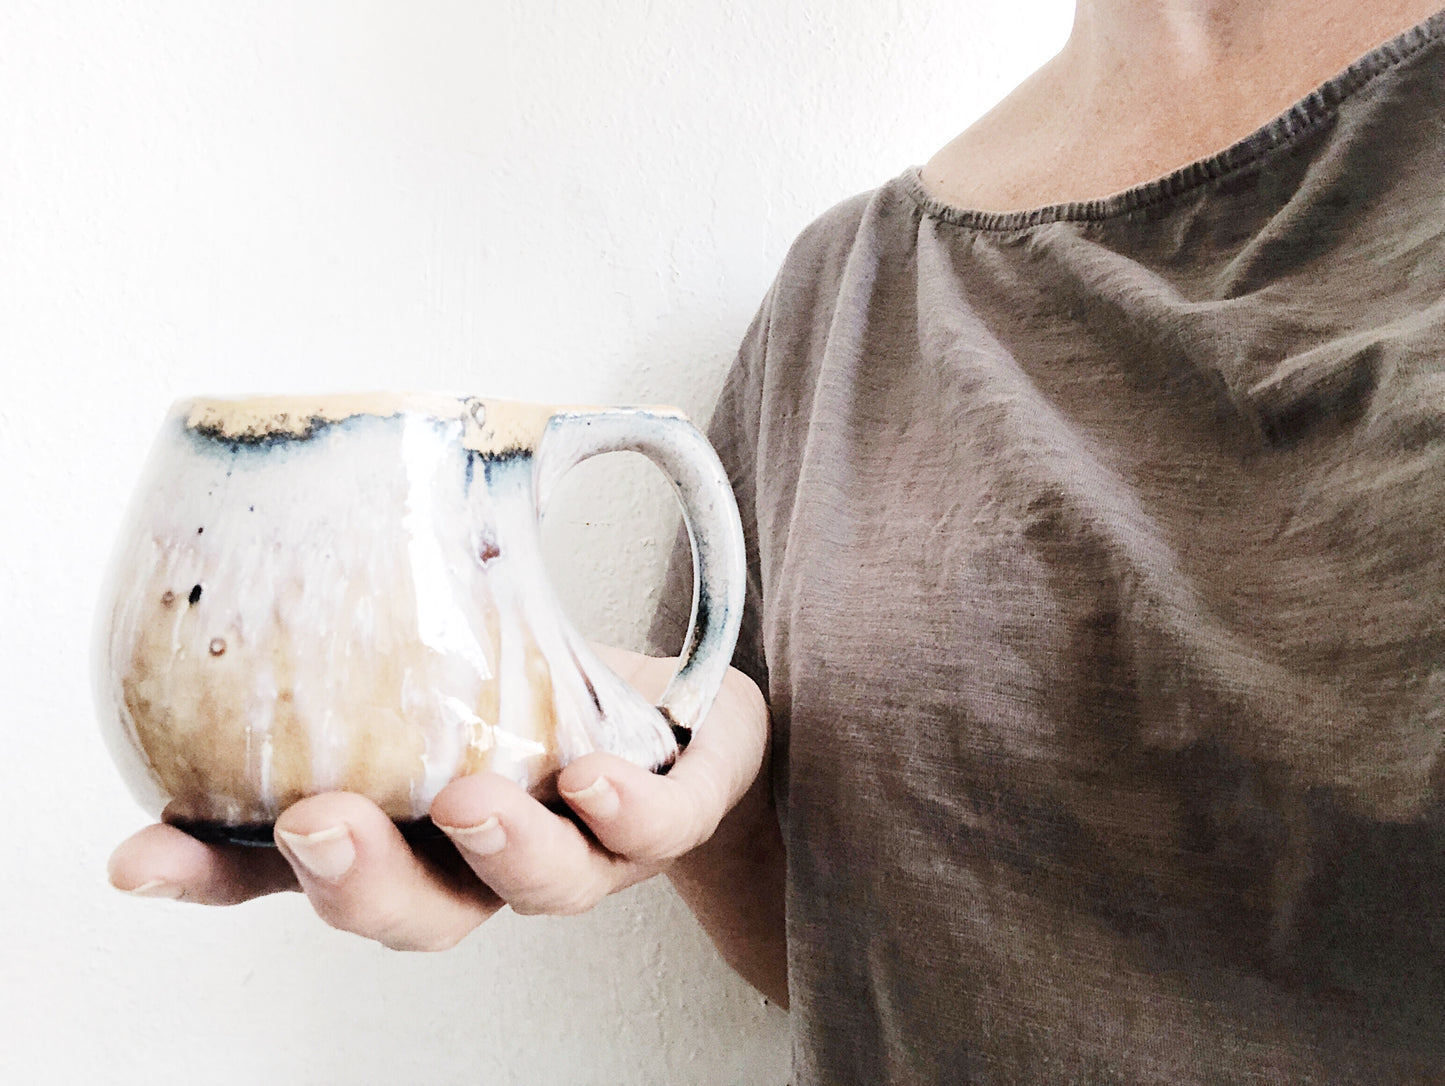 Handmade Ceramic Splash Mug